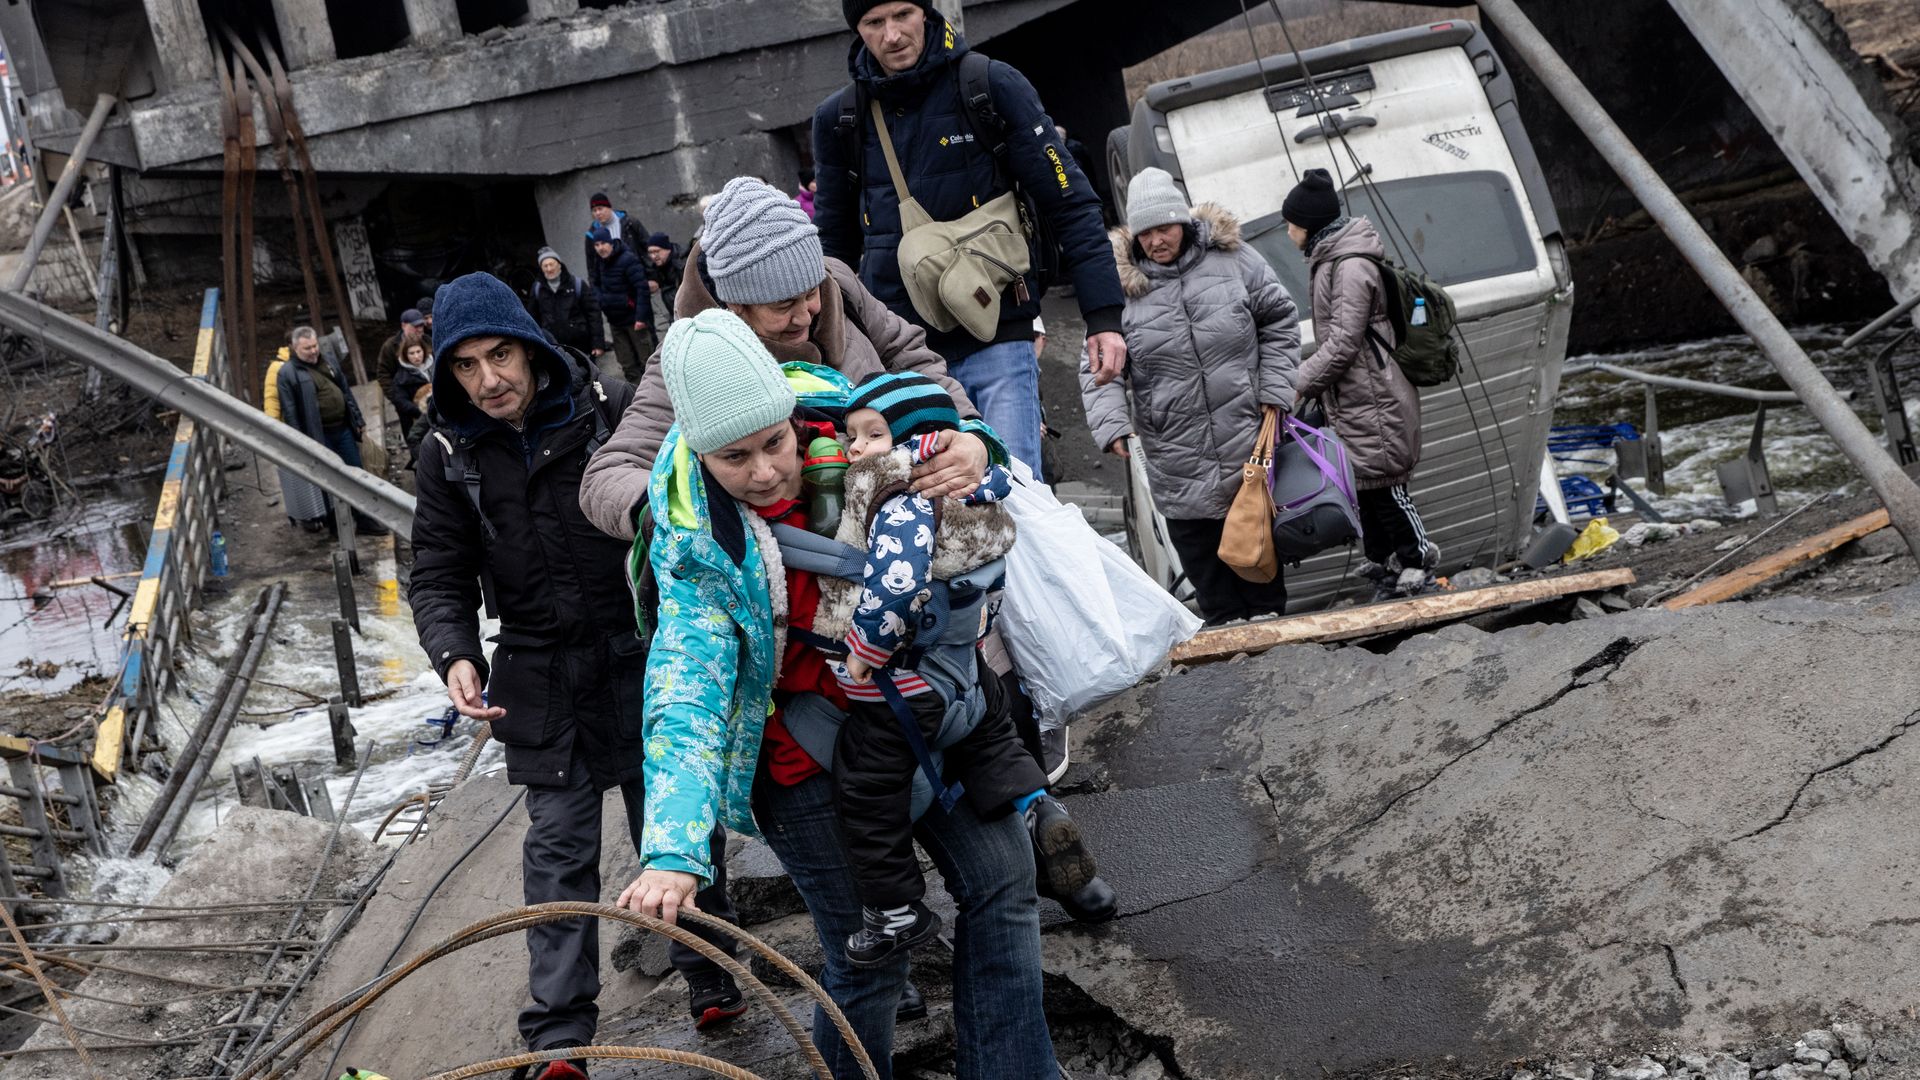 Residents in Irpin, Ukraine flee